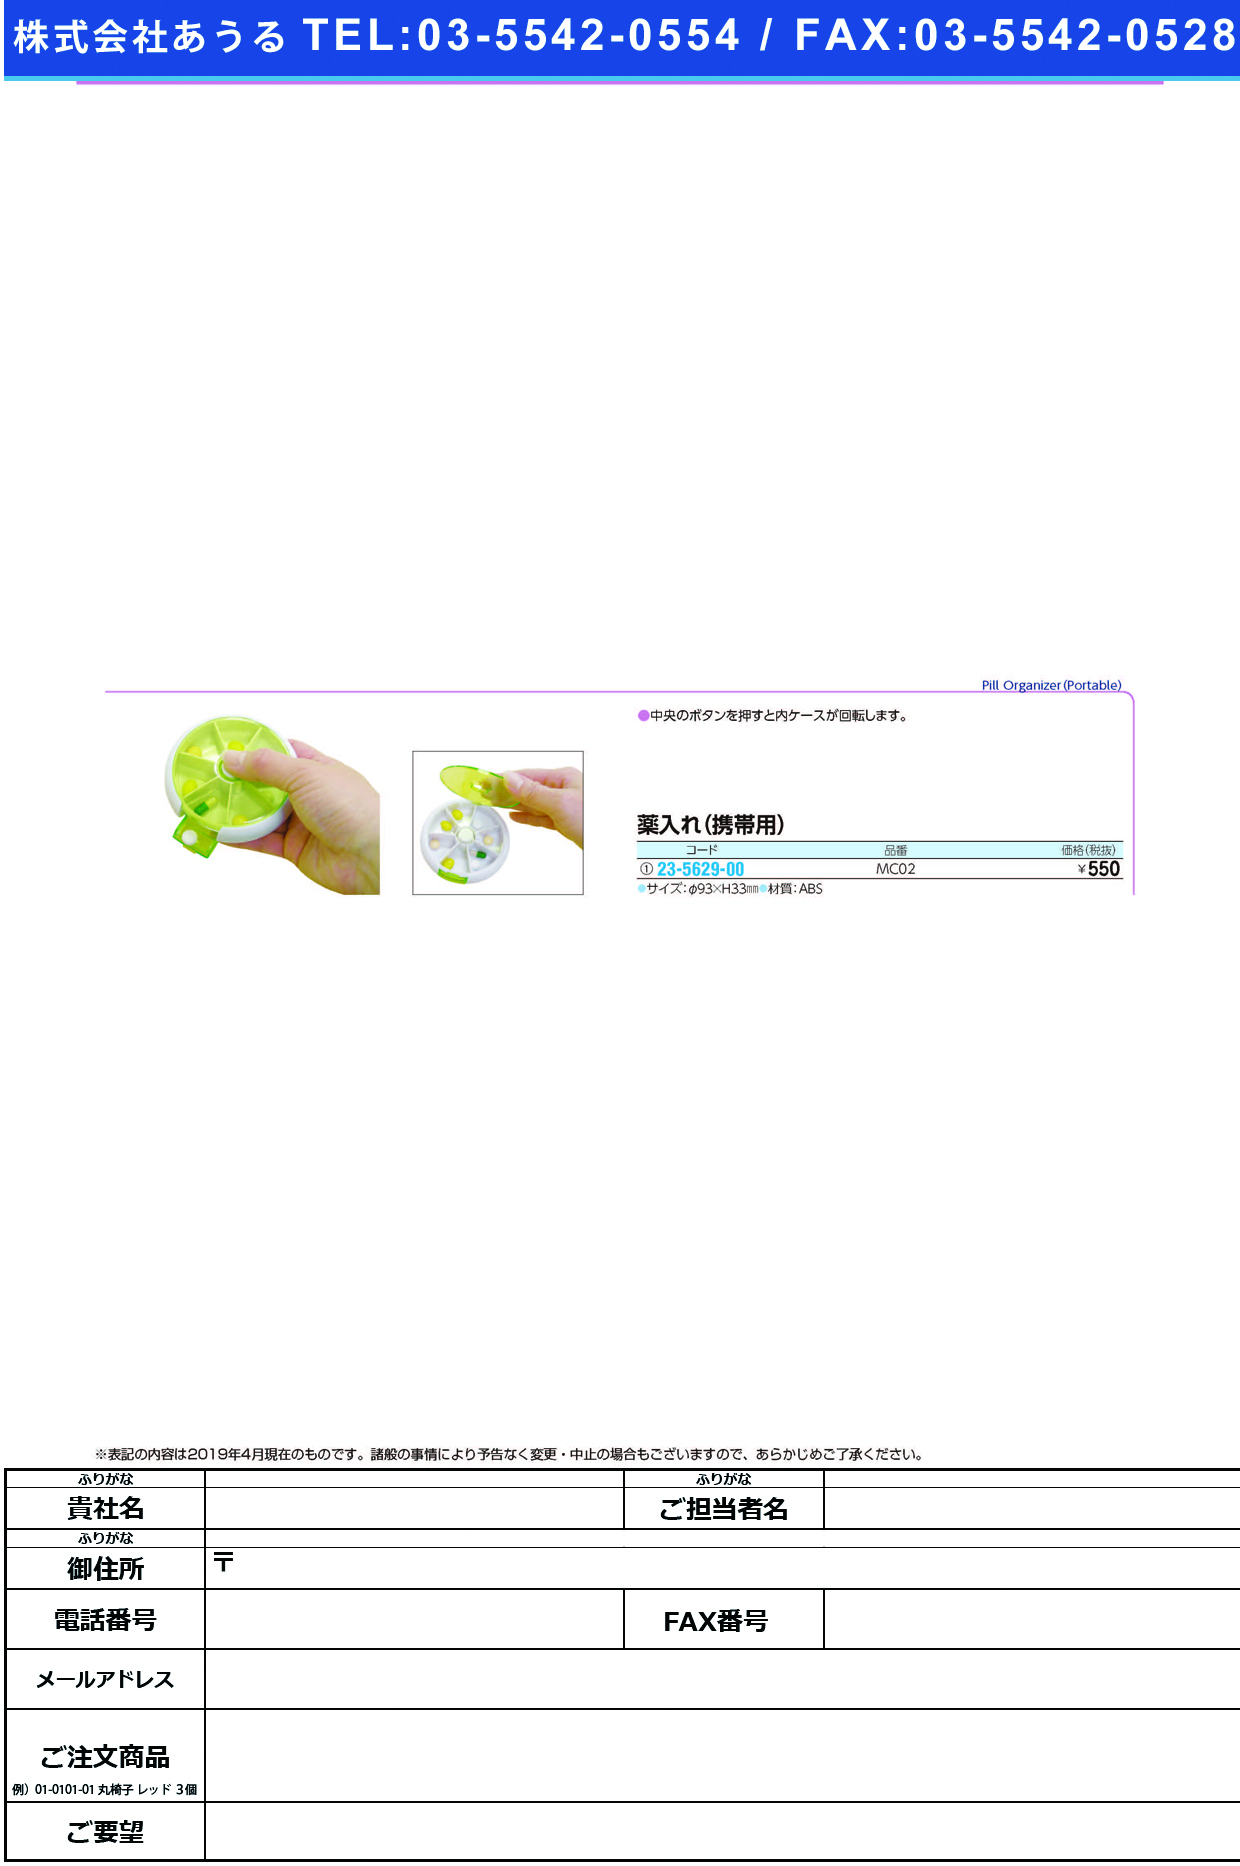 (23-5629-00)テイコブ薬入れ（携帯用） MC02 ﾃｲｺﾌﾞｸｽﾘｲﾚ(ｹｲﾀｲﾖｳ)【1個単位】【2019年カタログ商品】